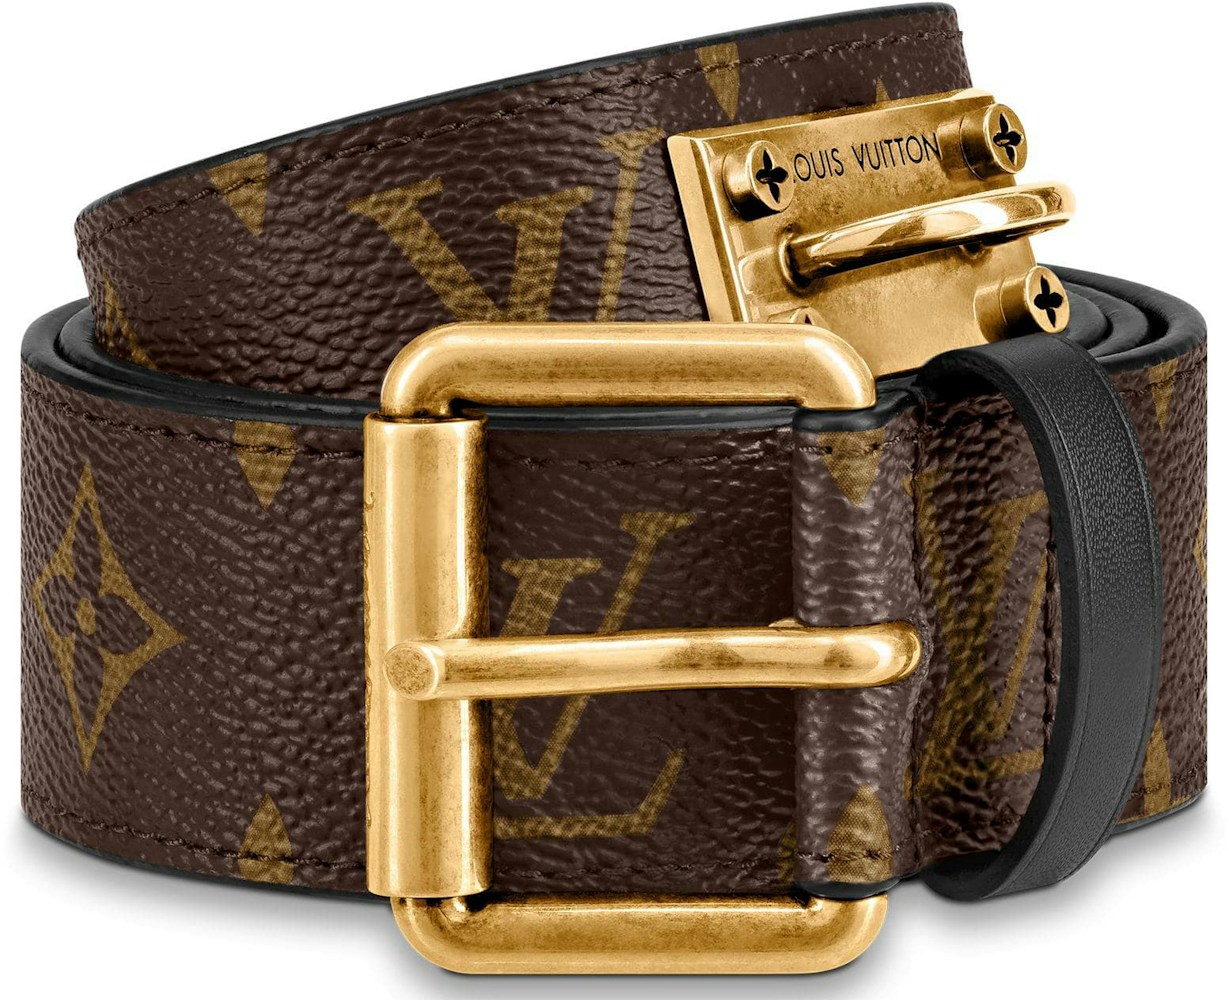 Louis Vuitton 20mm Black Leather Belt Gold LV Buckle size 75 / 30